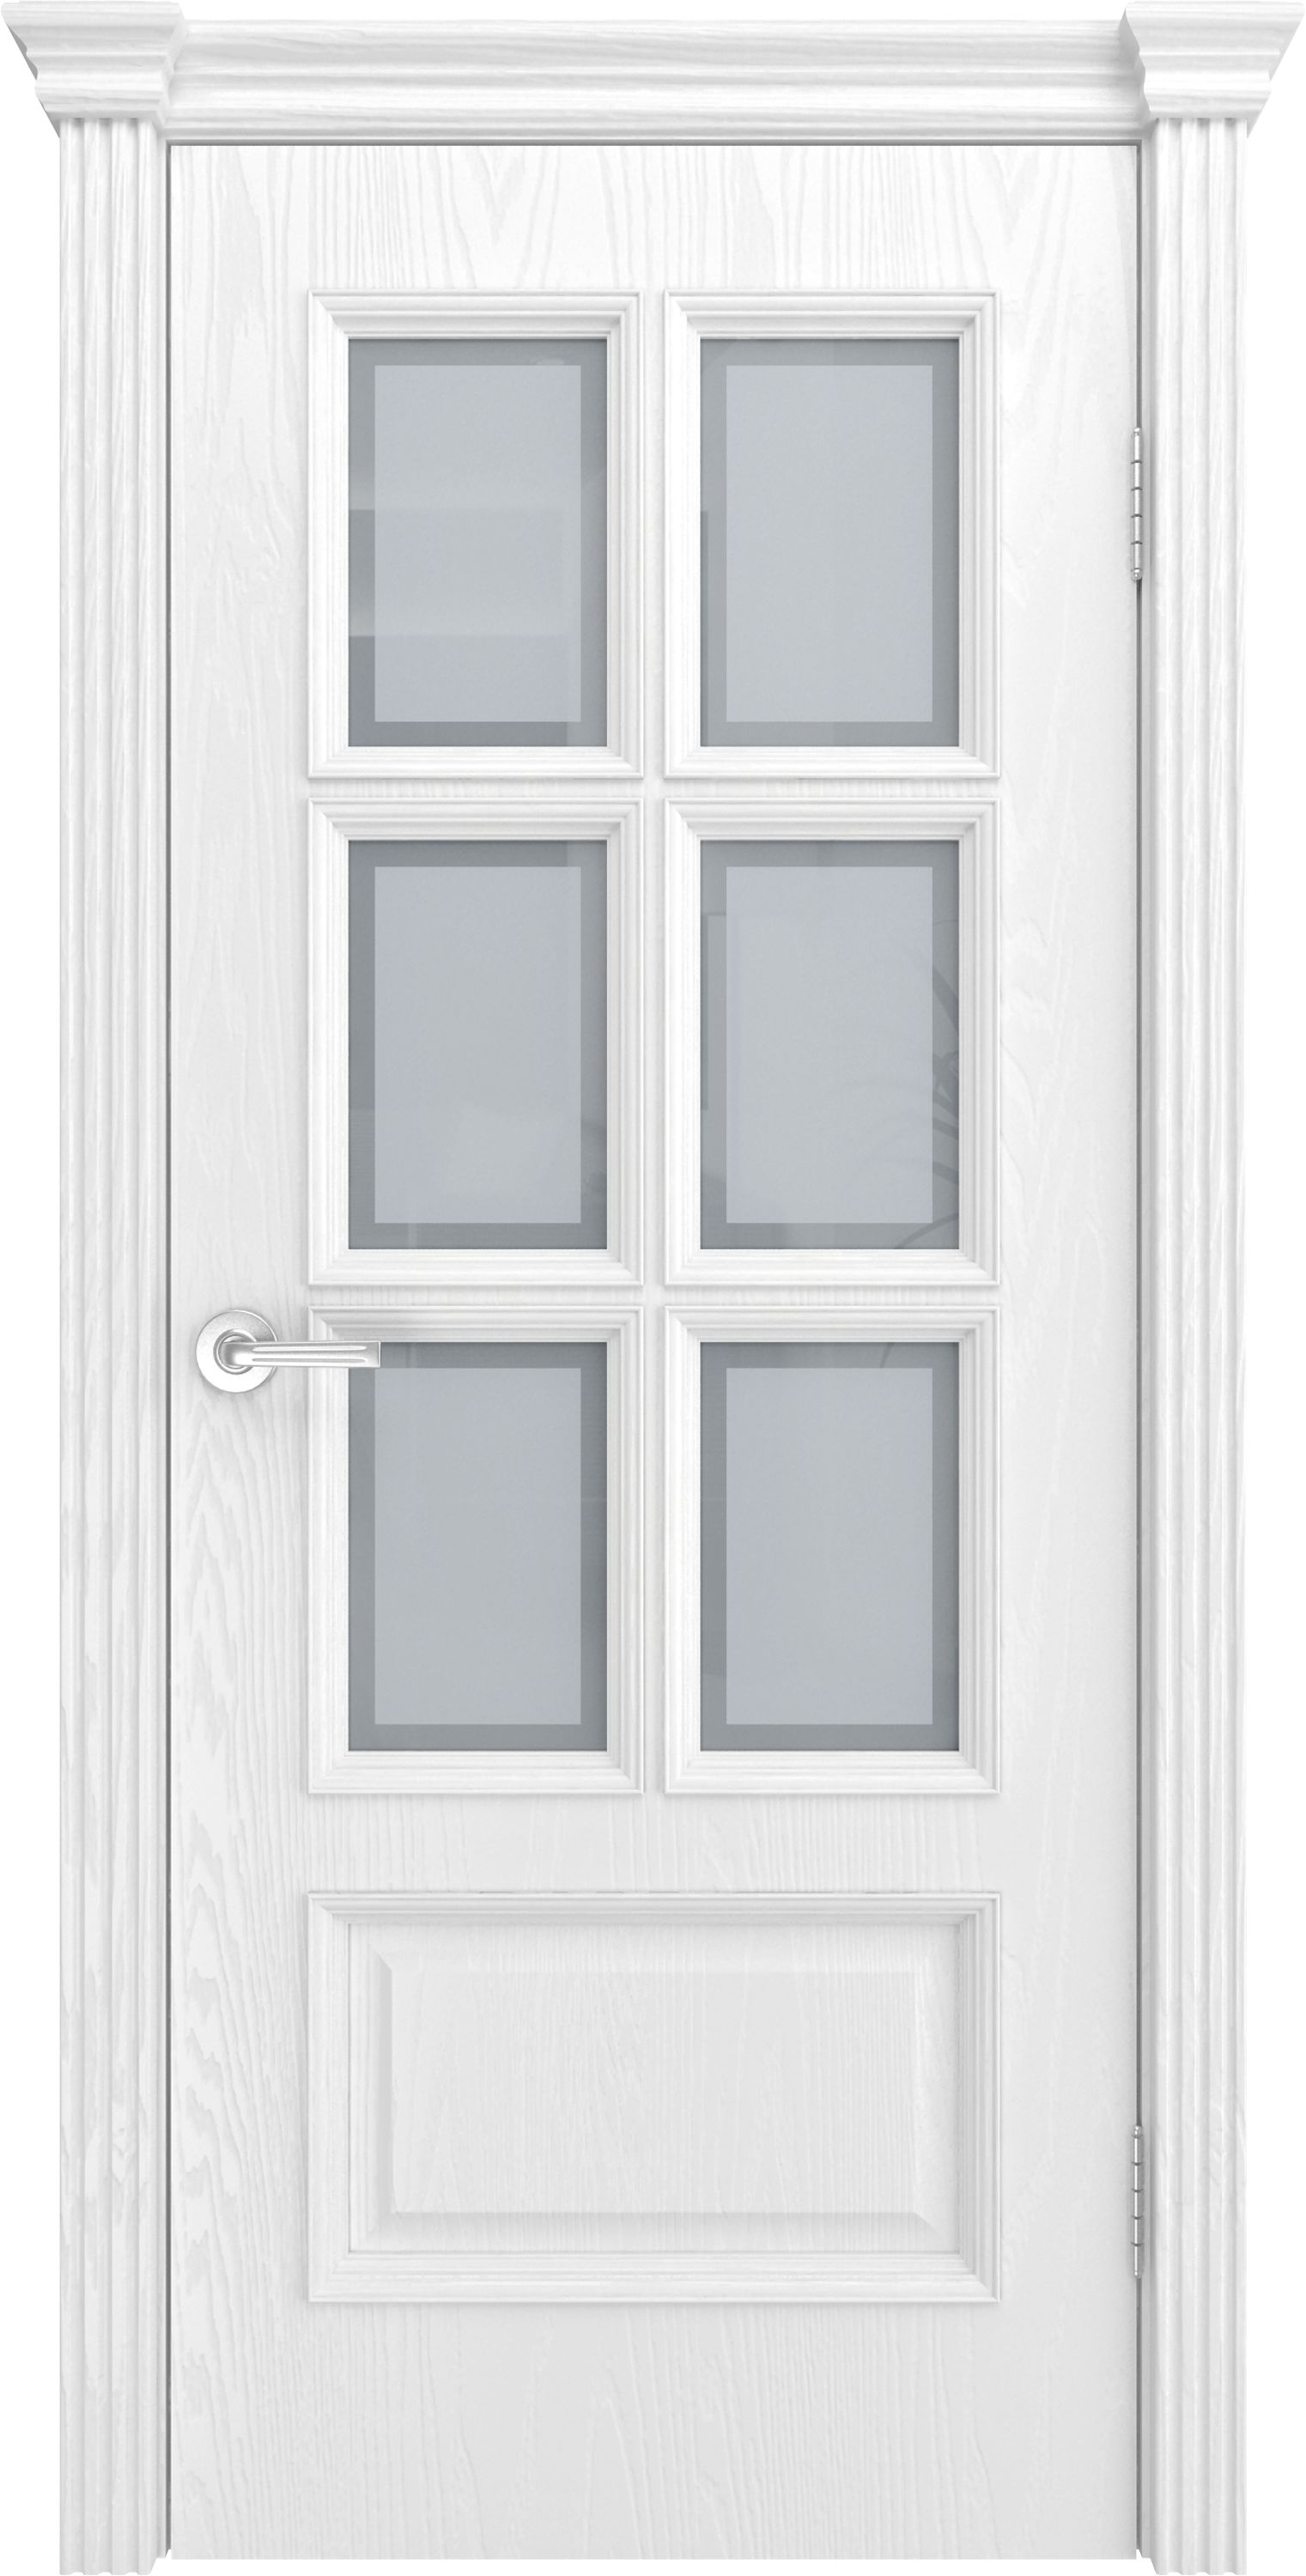 Двери шпонированные ТЕКОНА Фрейм 10 со стеклом Ясень белоснежный размер 200 х 70 см. артикул F0000070756